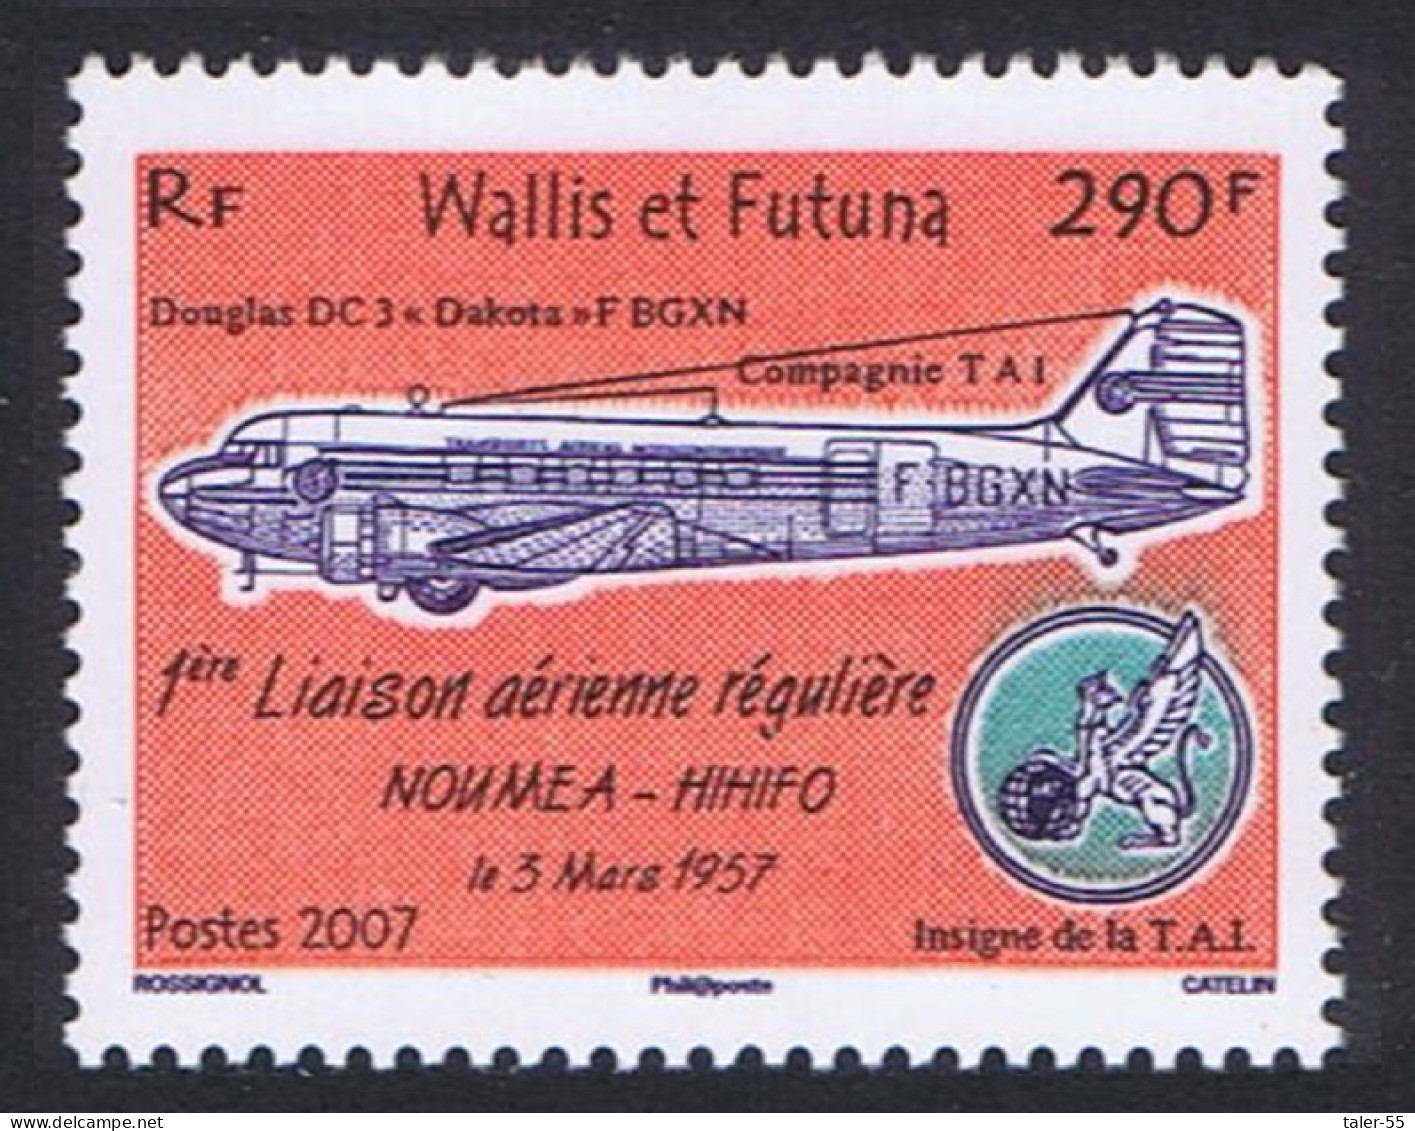 Wallis And Futuna First Regular Flight Noumea-Hihifo 2007 MNH SG#912 - Ongebruikt